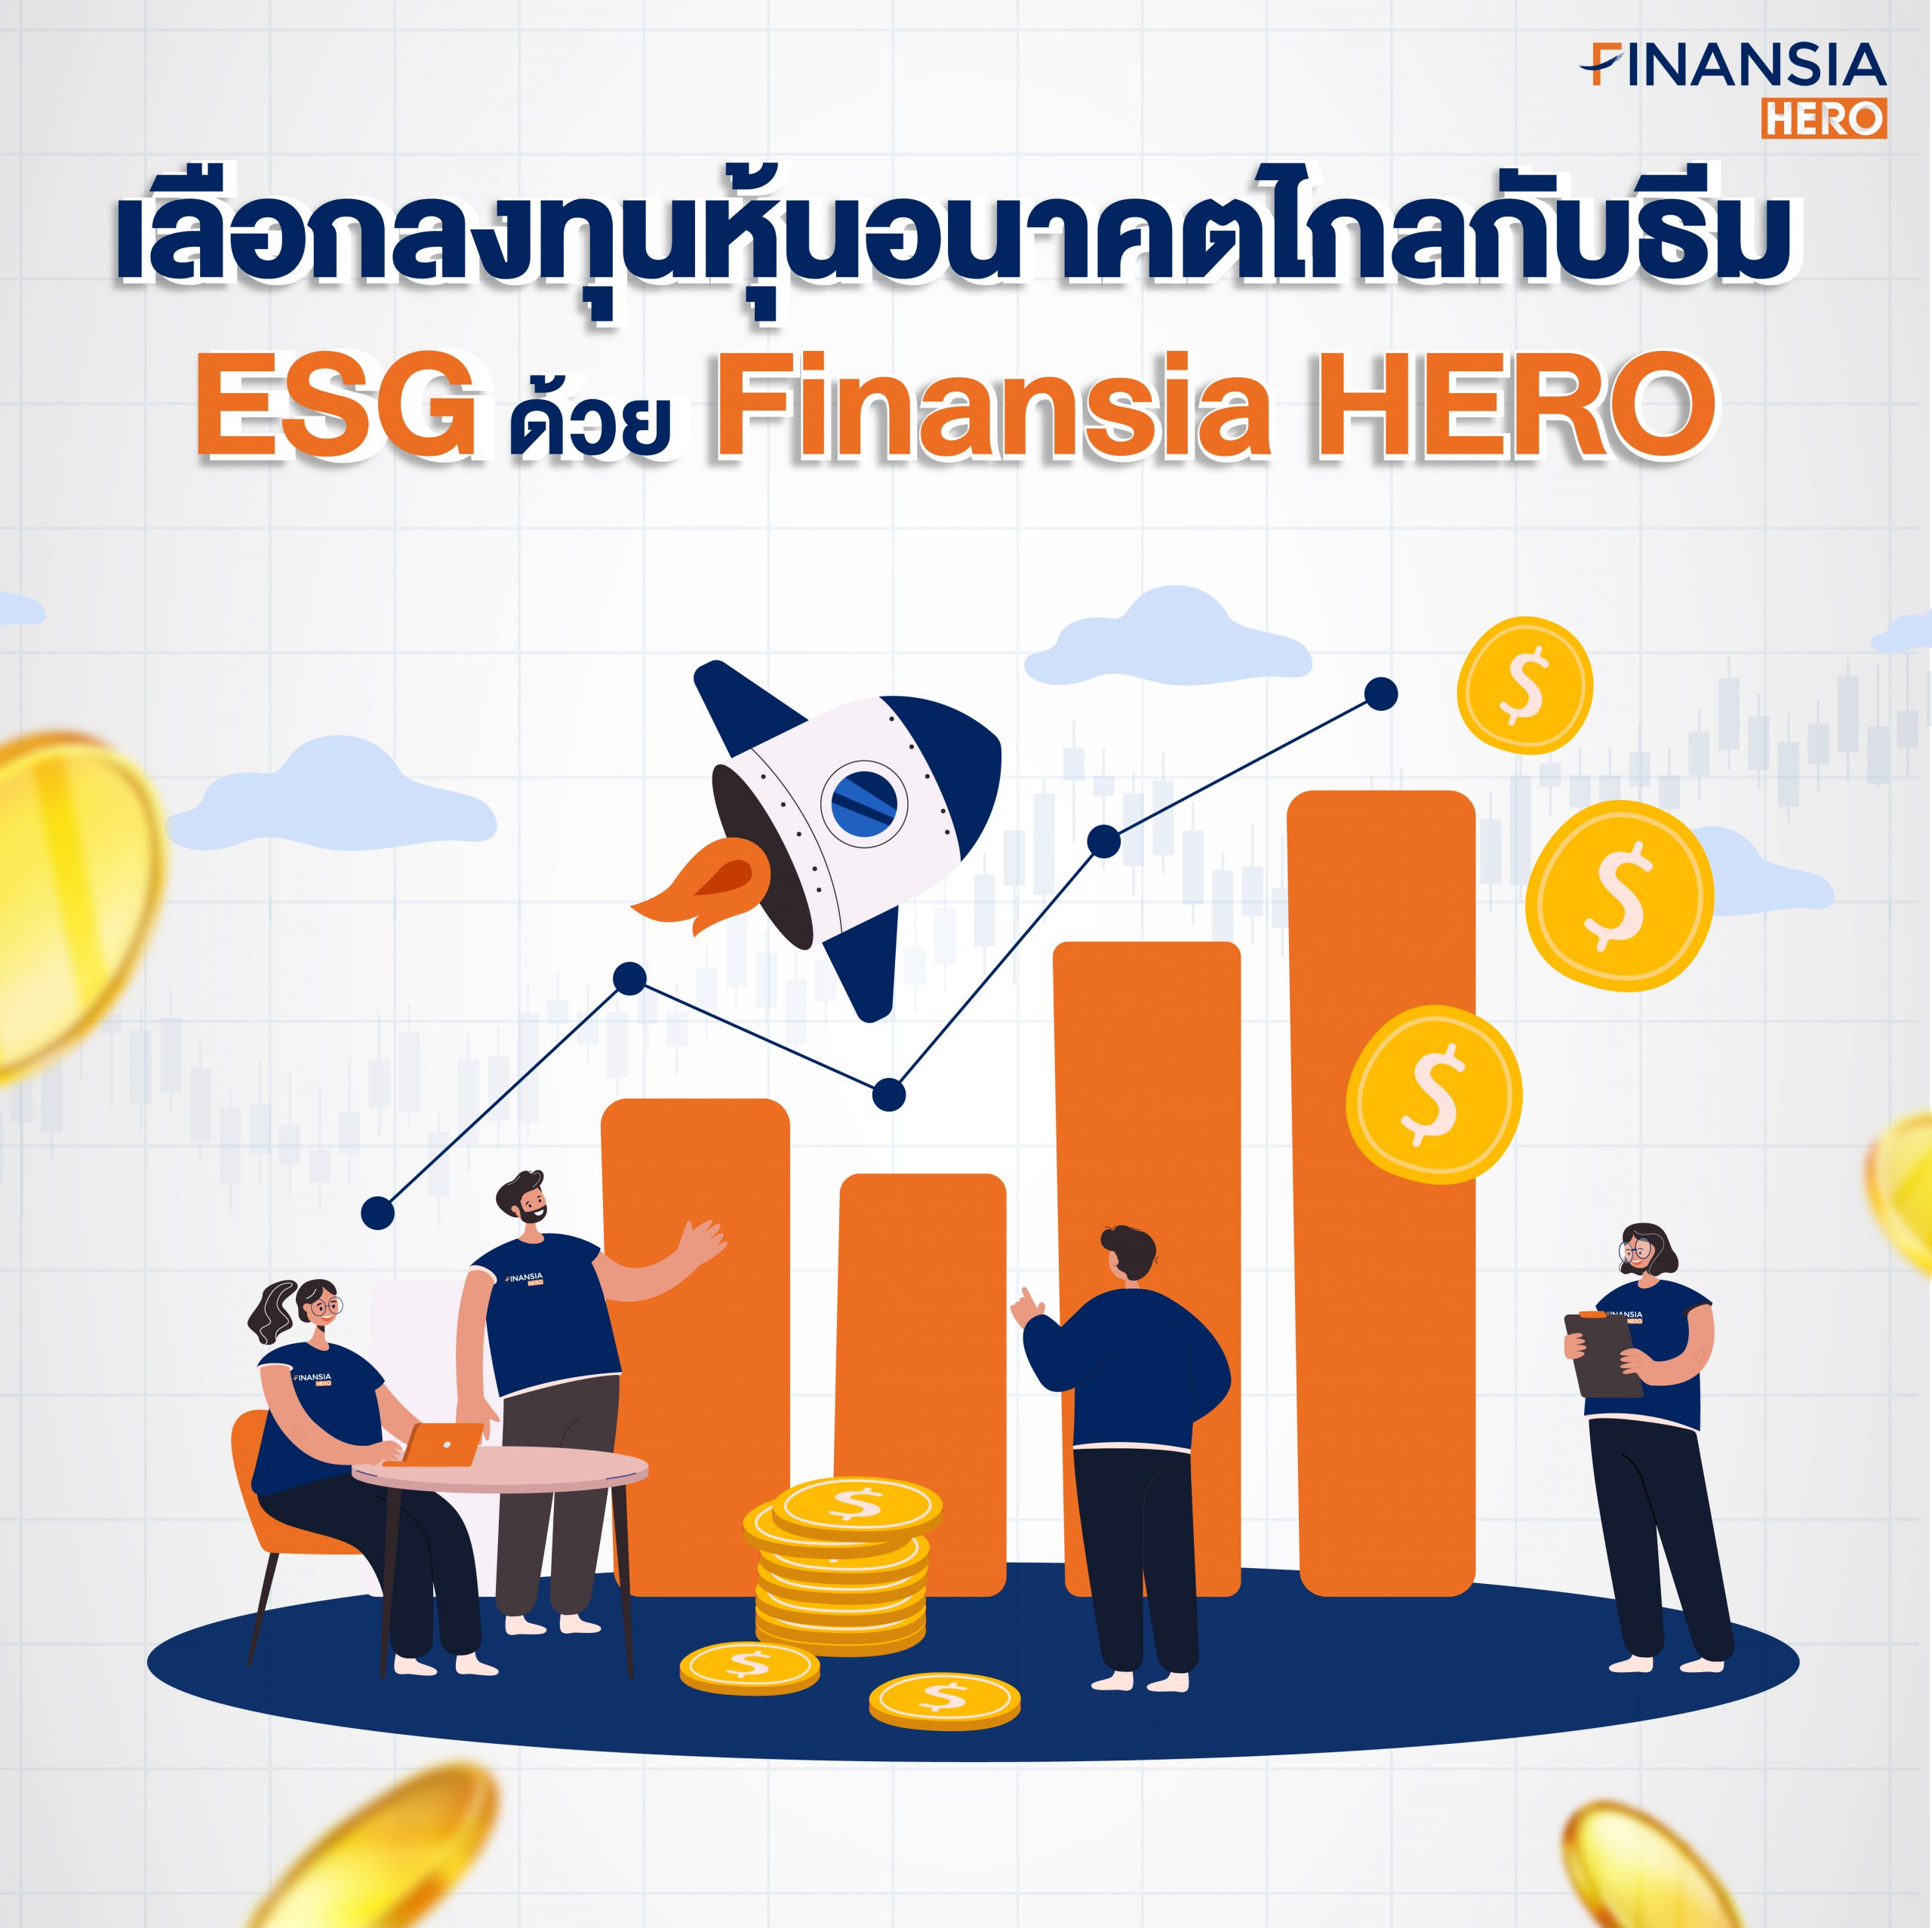 เลือกลงทุนหุ้นอนาคตไกลกับธีม ESG ด้วย Finansia HERO